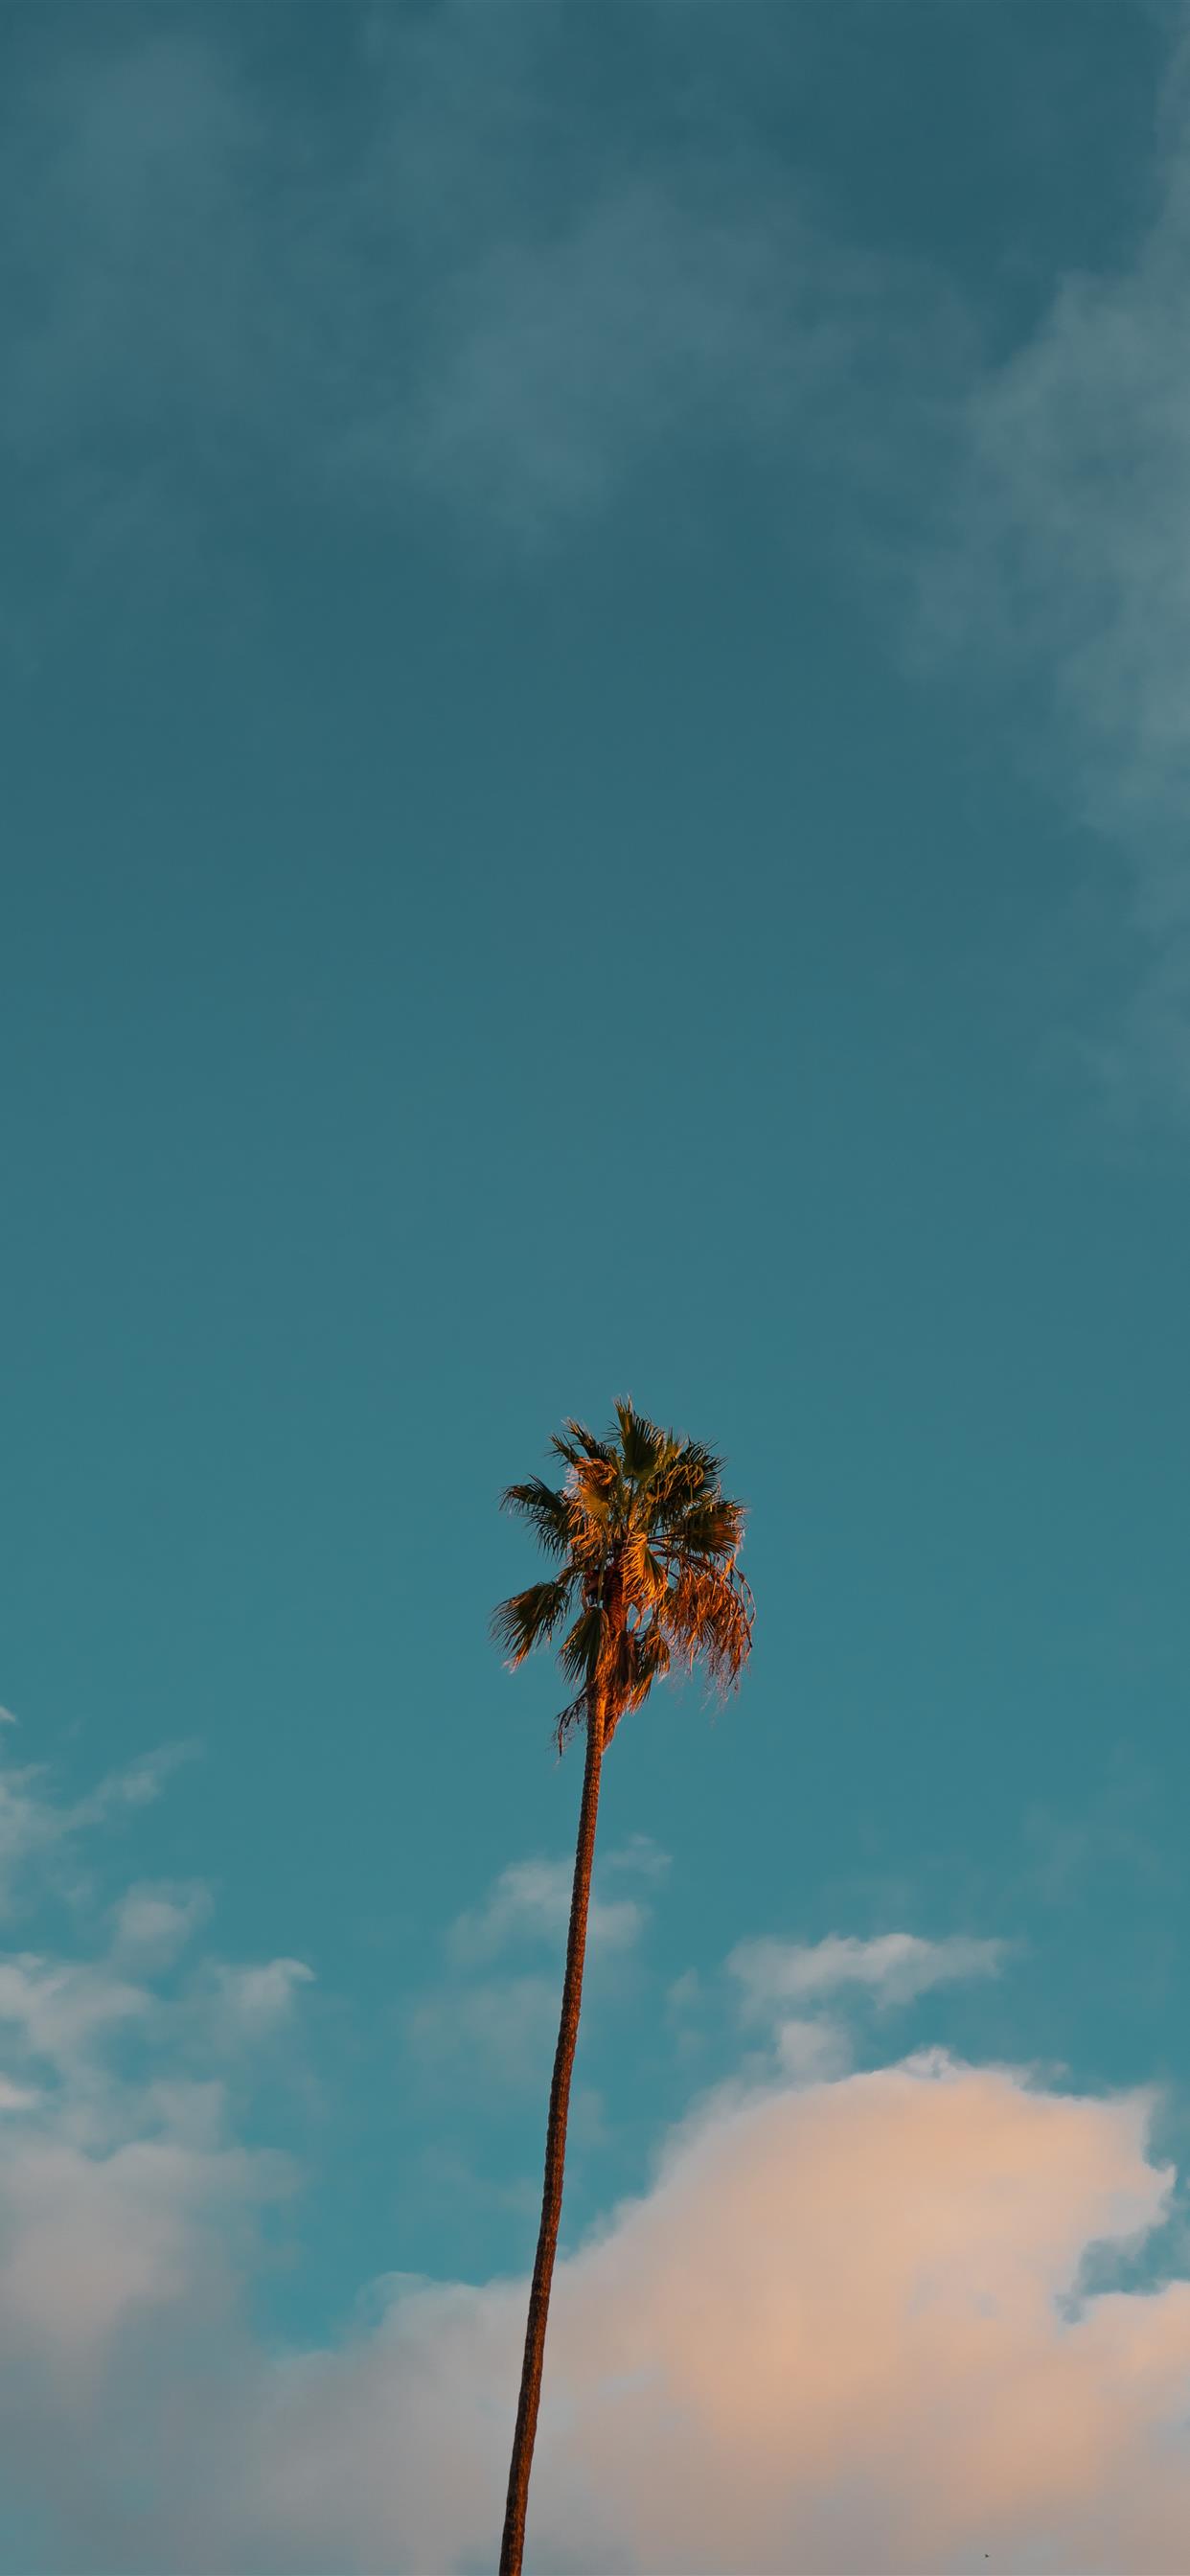 Cây cọ là biểu tượng của khu nghỉ mát và sự nghỉ ngơi thư giãn. Hình ảnh của những hàng cây cọ bên bãi biển và ánh nắng ban mai sẽ khiến bạn thấy như đang đứng trên một bãi biển đẹp nhất thế giới và cảm thấy được sự bình yên và thanh thản trong tâm hồn.